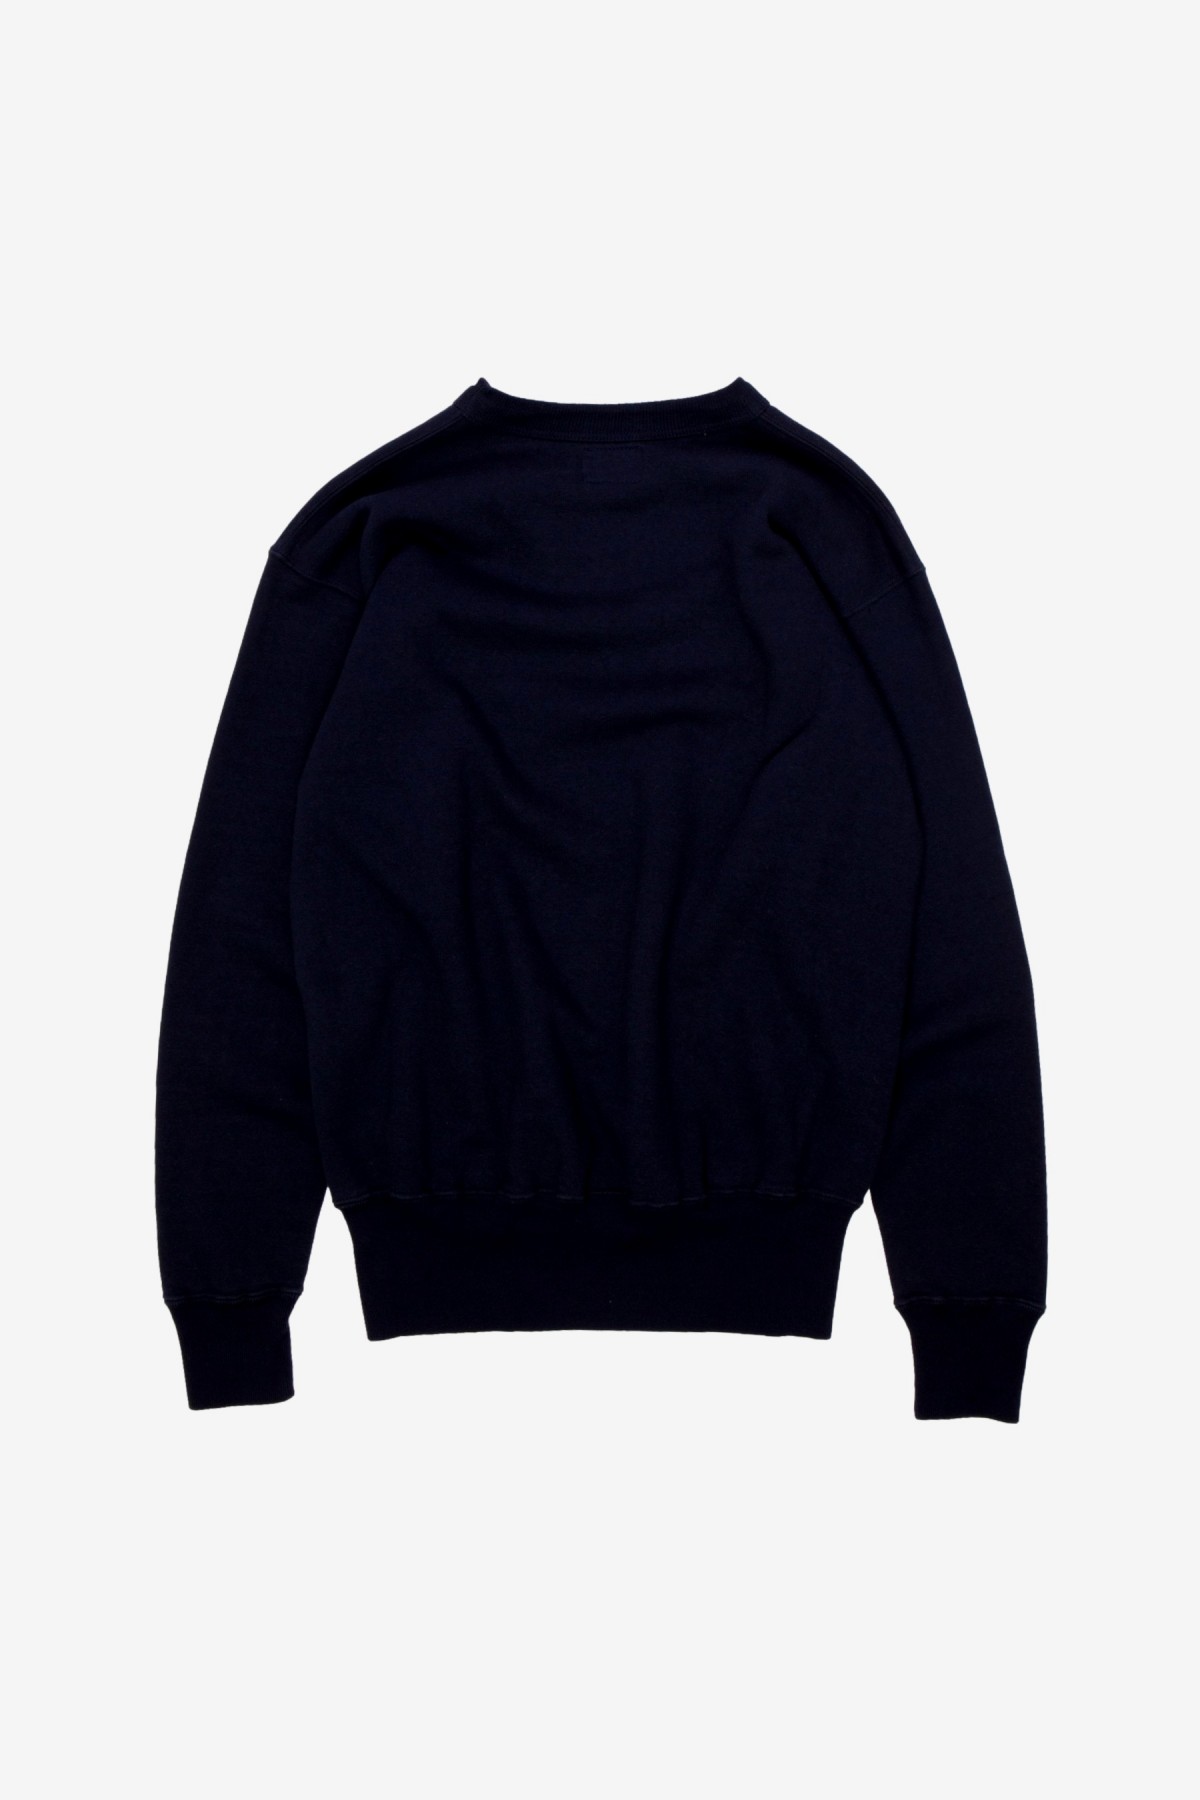 Sunray Sportswear Laniakea Crewneck Sweater in Dark Navy